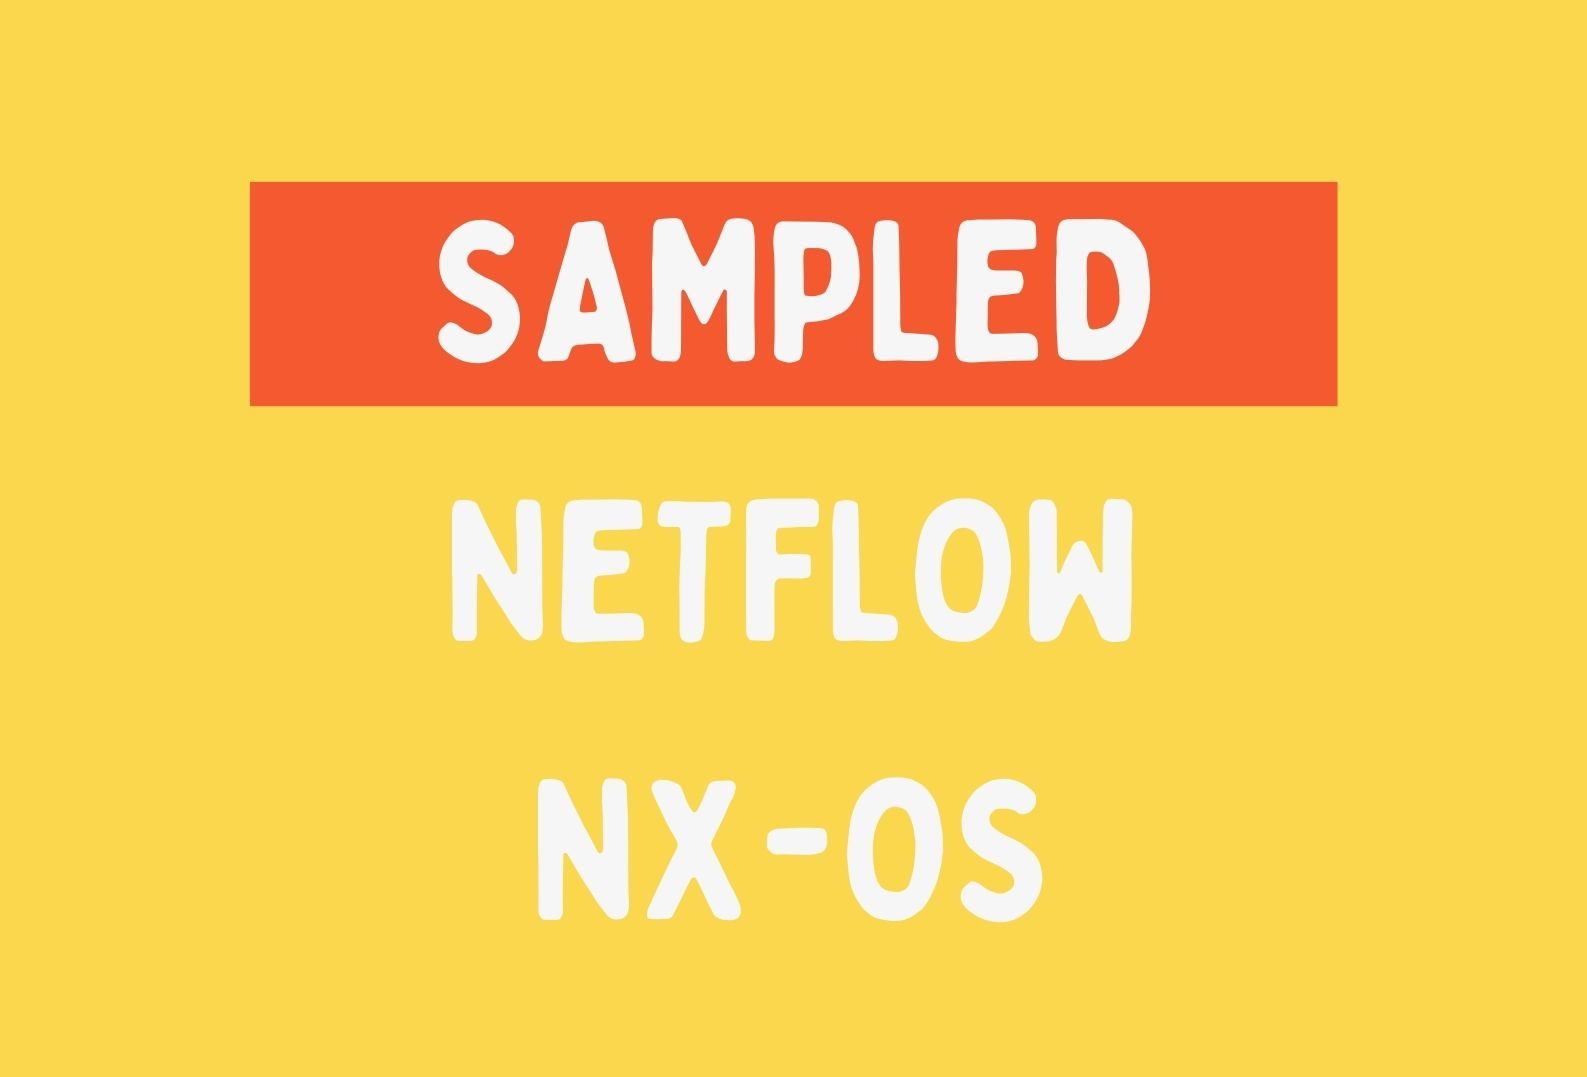 NX-OS Netflow sampled mode – Explained & Configuration